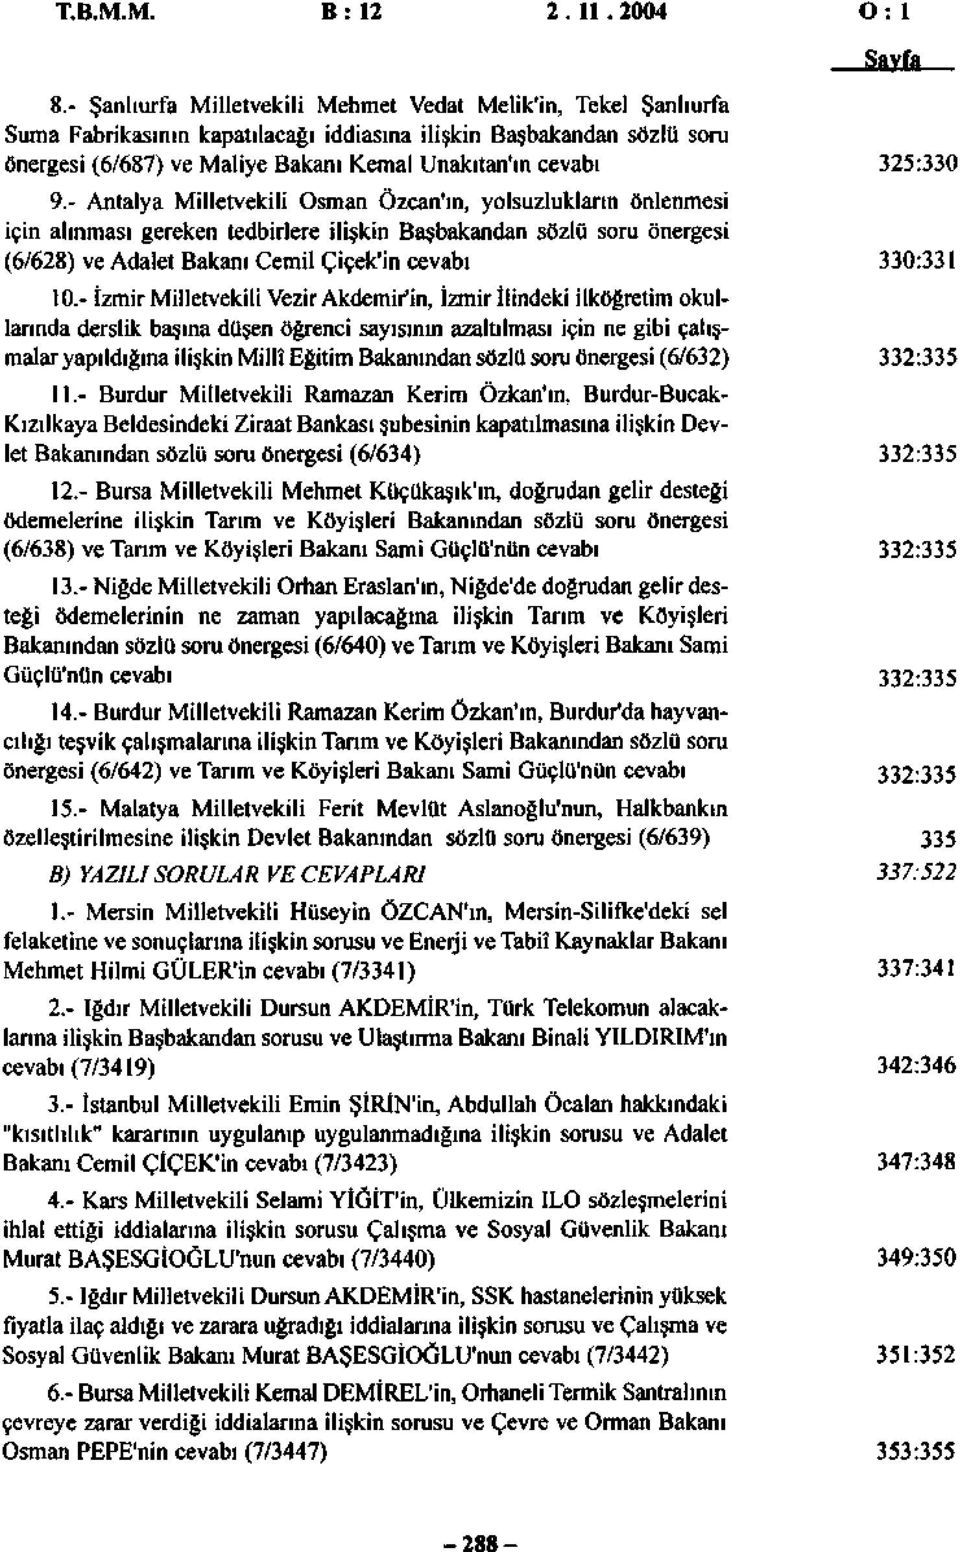 - Antalya Milletvekili Osman Özcan'ın, yolsuzlukların önlenmesi için alınması gereken tedbirlere ilişkin Başbakandan sözlü soru önergesi (6/628) ve Adalet Bakanı Cemil Çiçek'in cevabı 0.